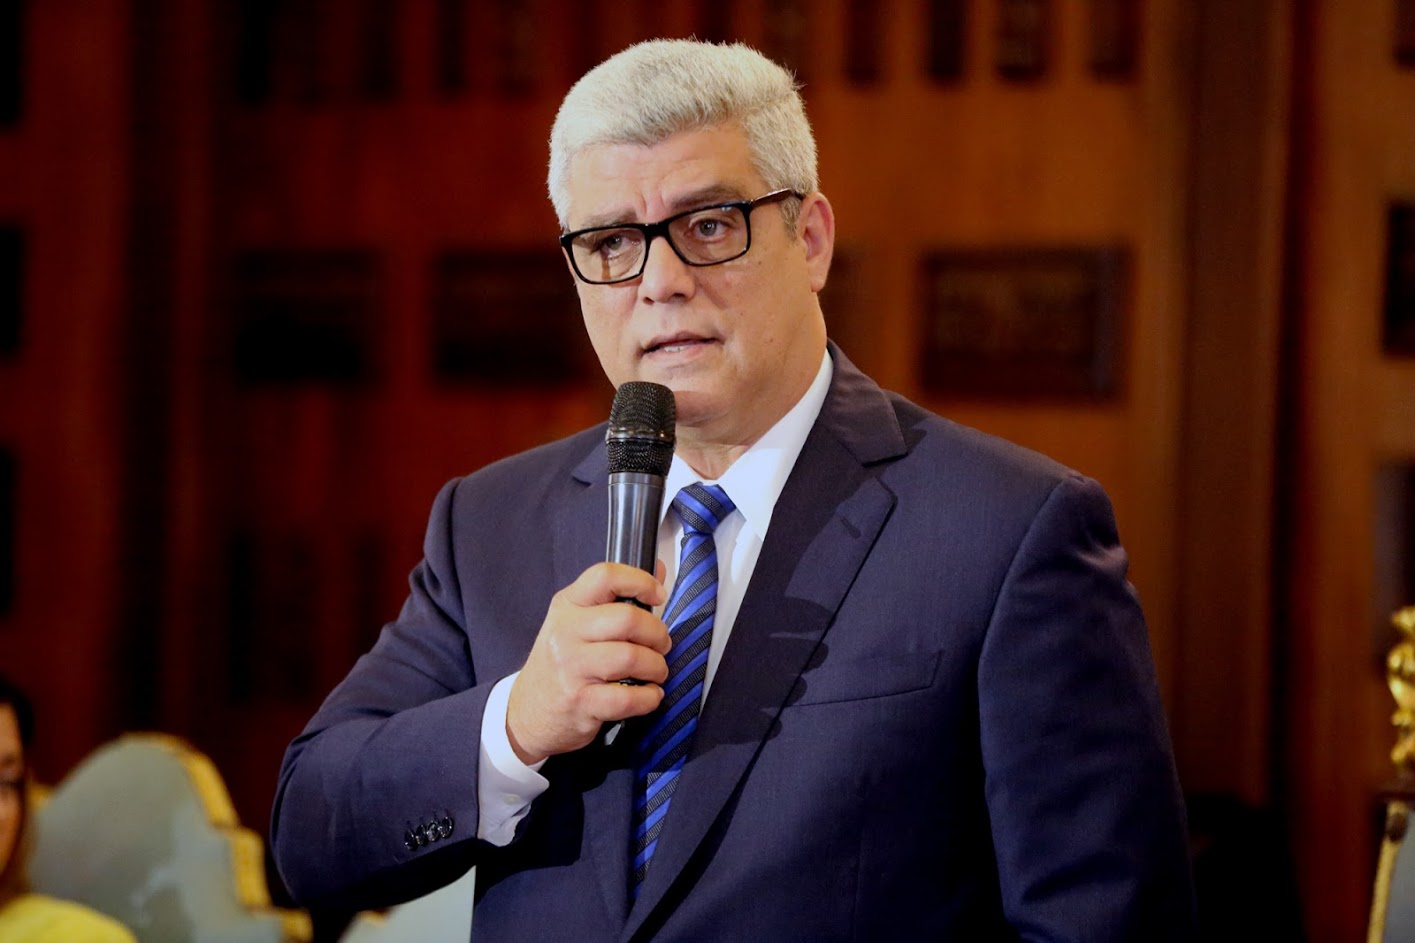 Alfonso Marquina: Ojalá los diputados del Psuv le expliquen a los venezolanos todos los hechos de corrupción